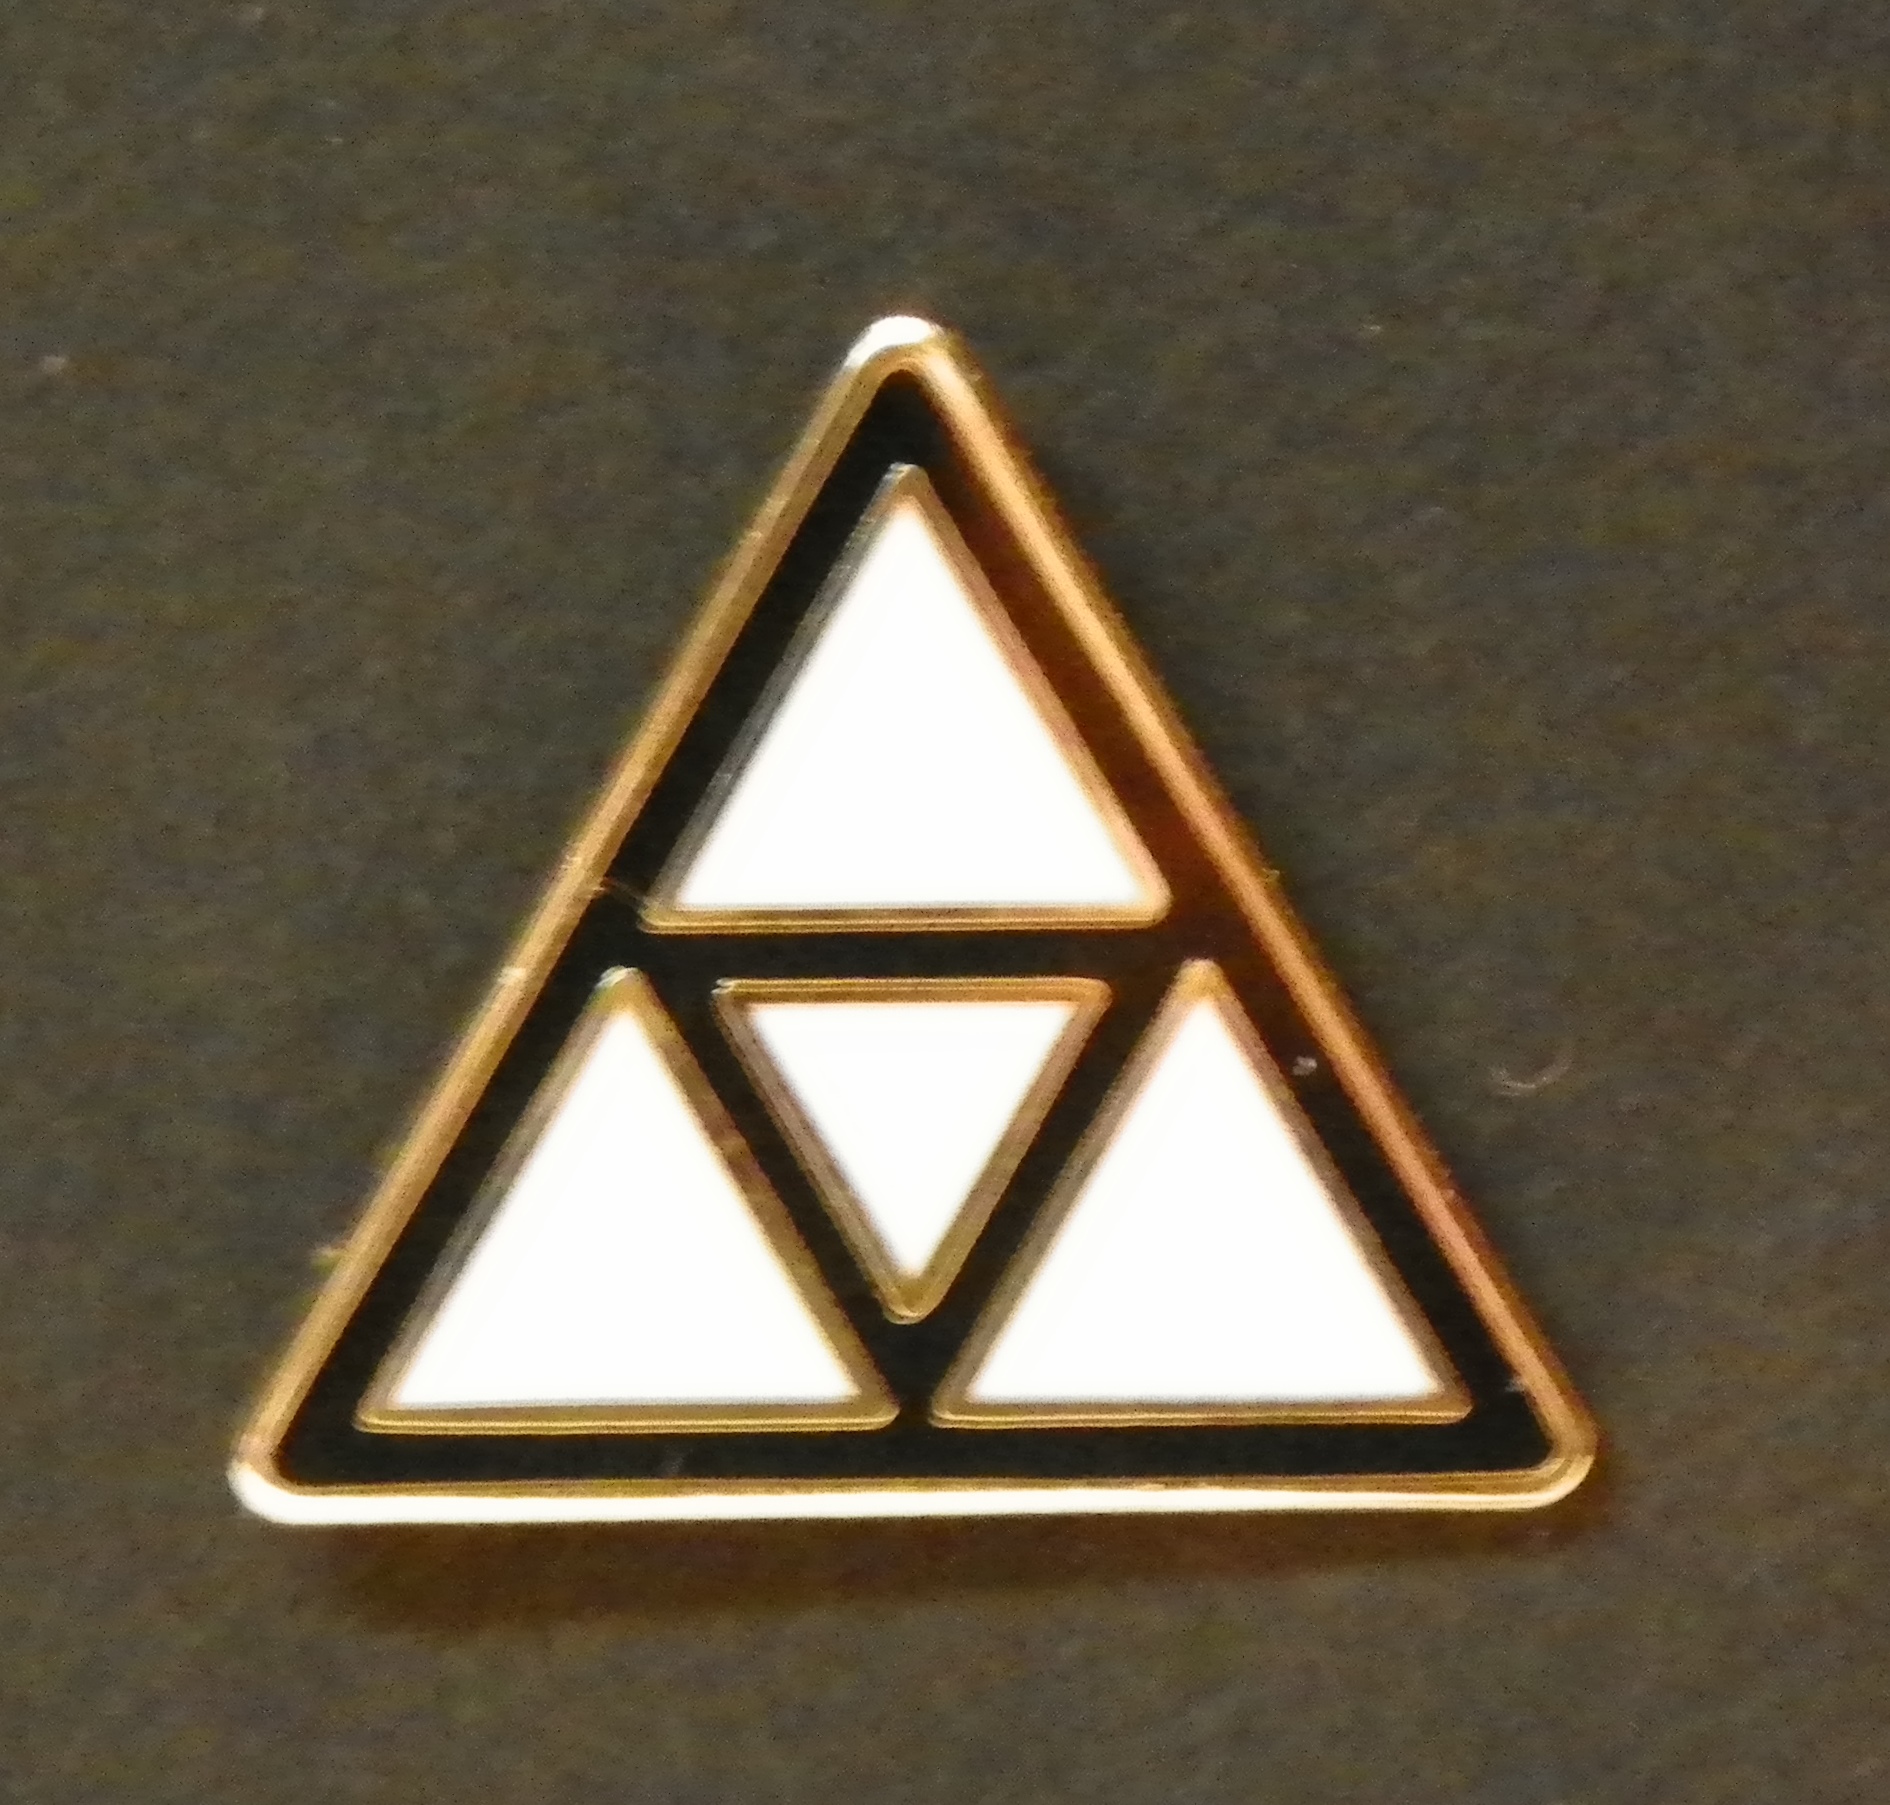 Машина три треугольника. Треугольник символ. Треугольник в треугольнике символ. Символ дв треугольника. Значок в виде треугольника.